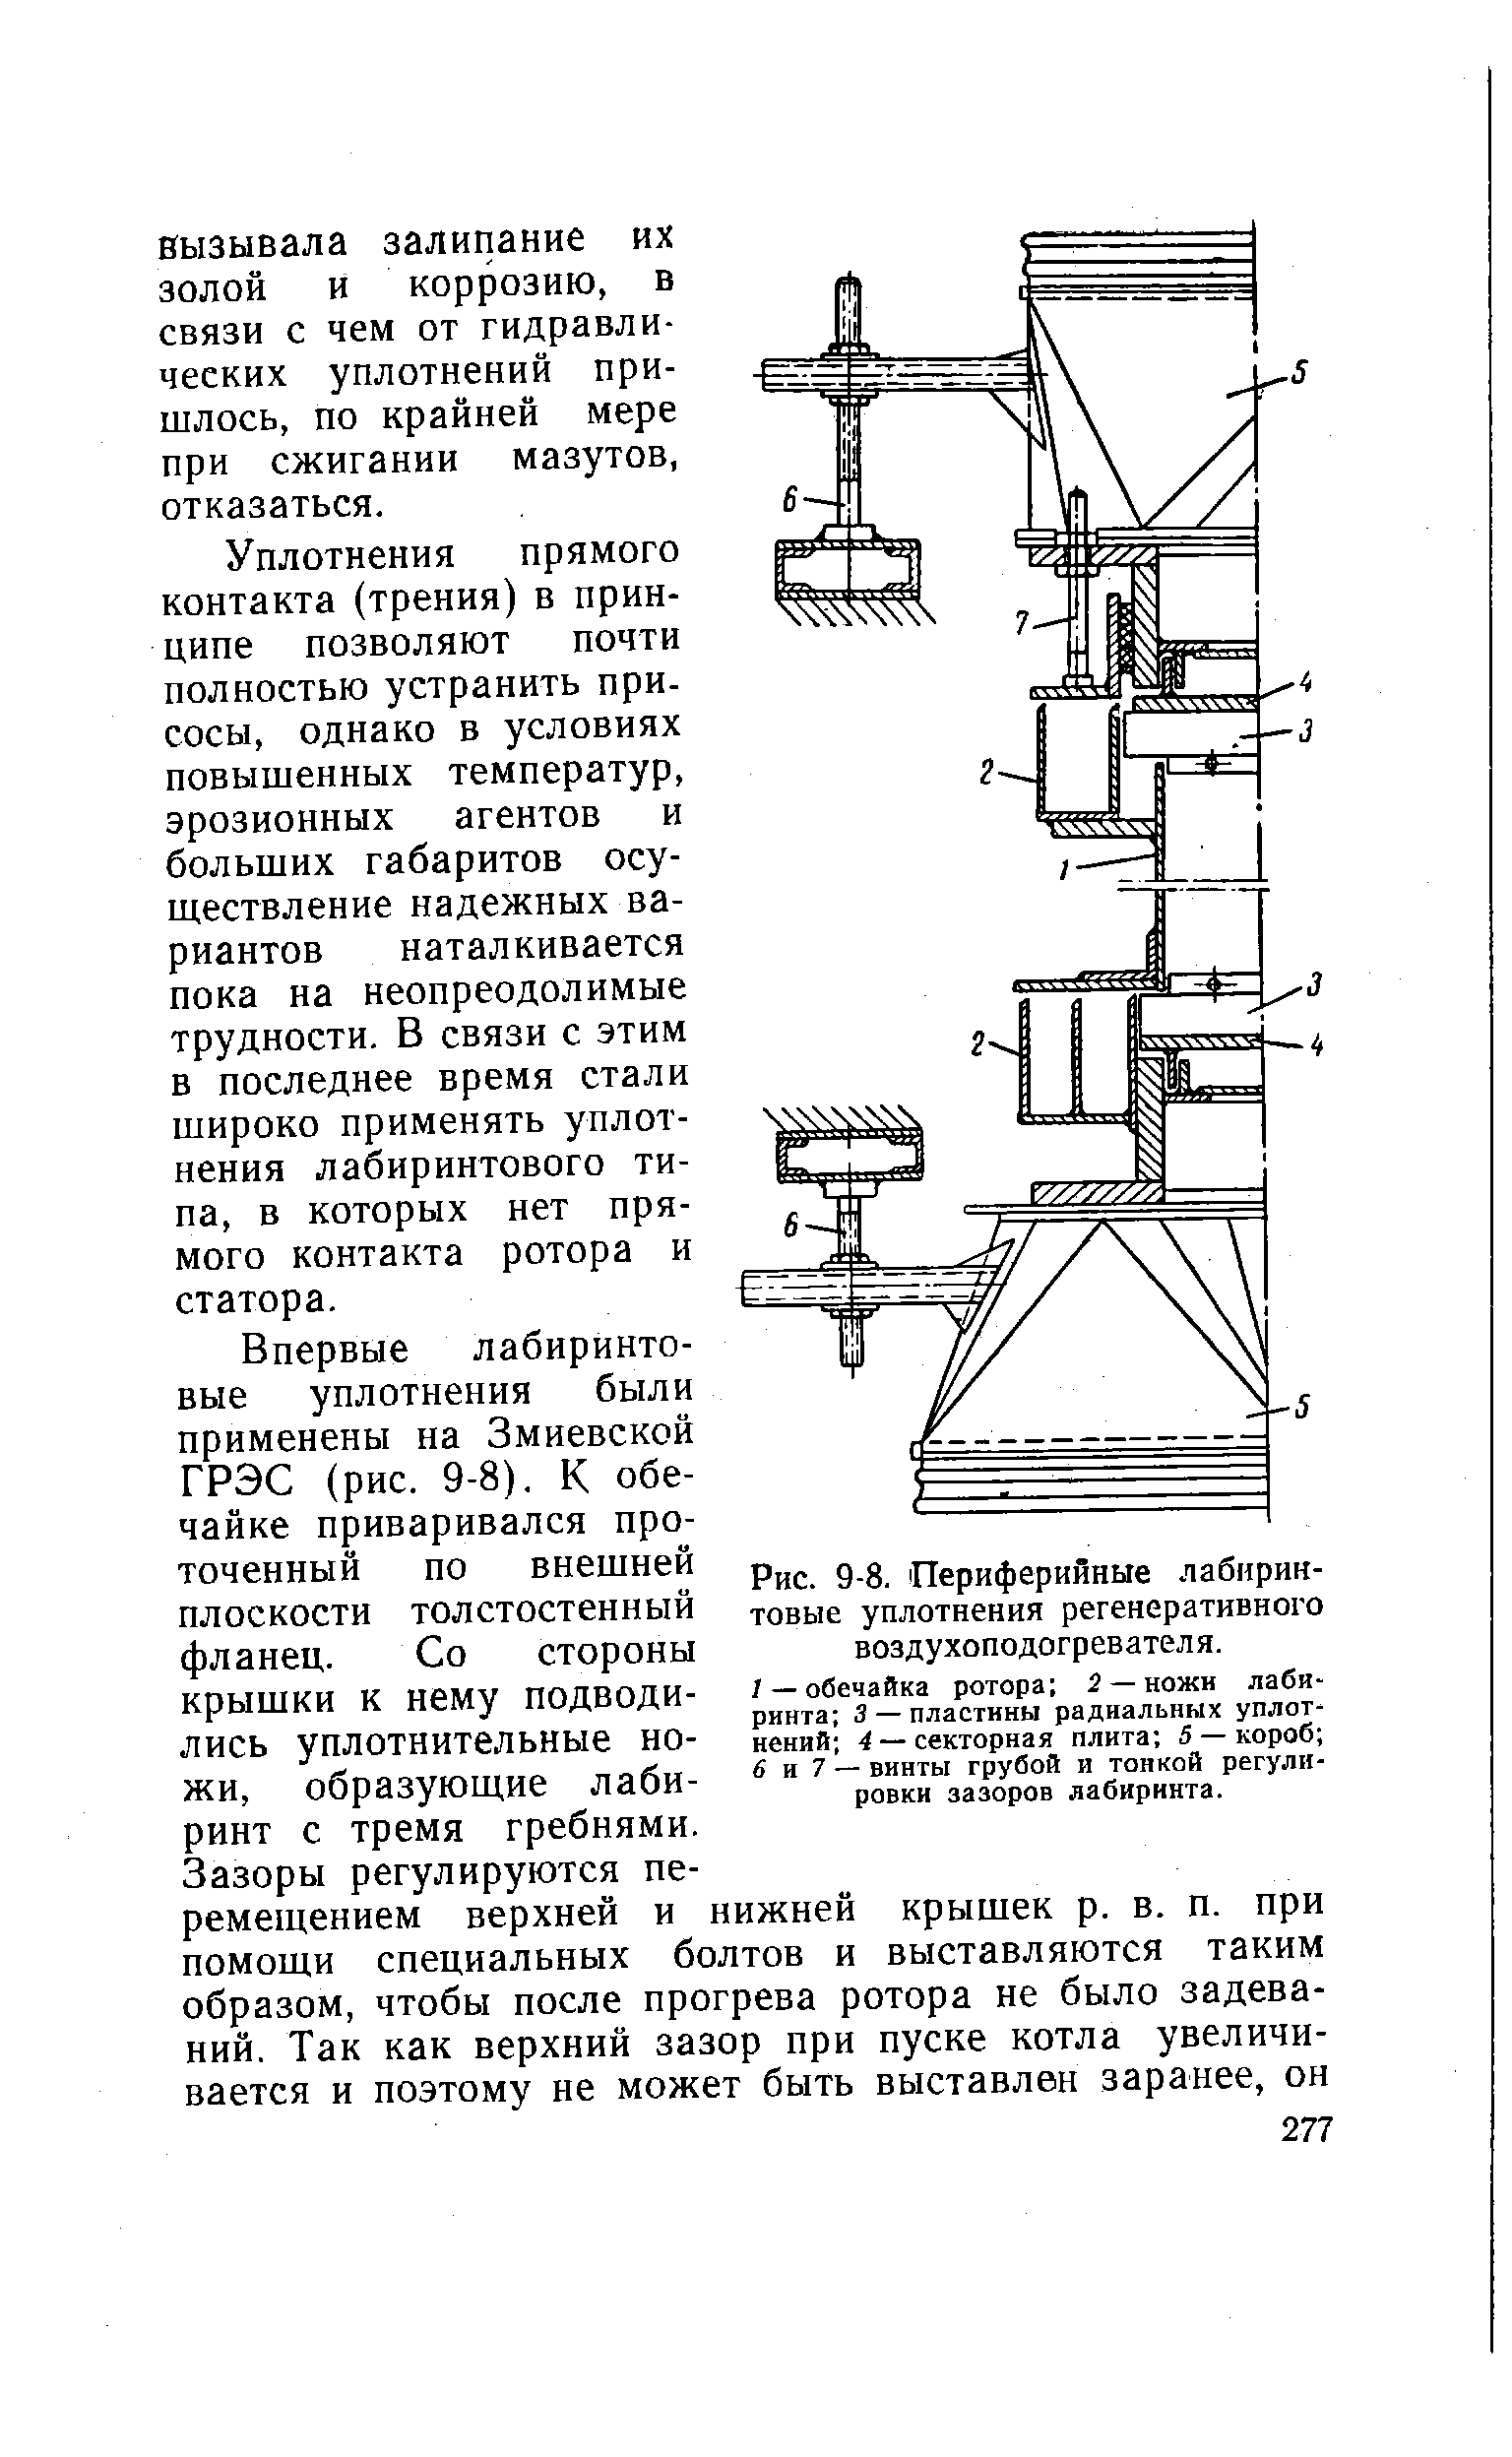 Рис. 9-8. Периферийные лабиринтовые уплотнения регенеративного воздухоподогревателя.
